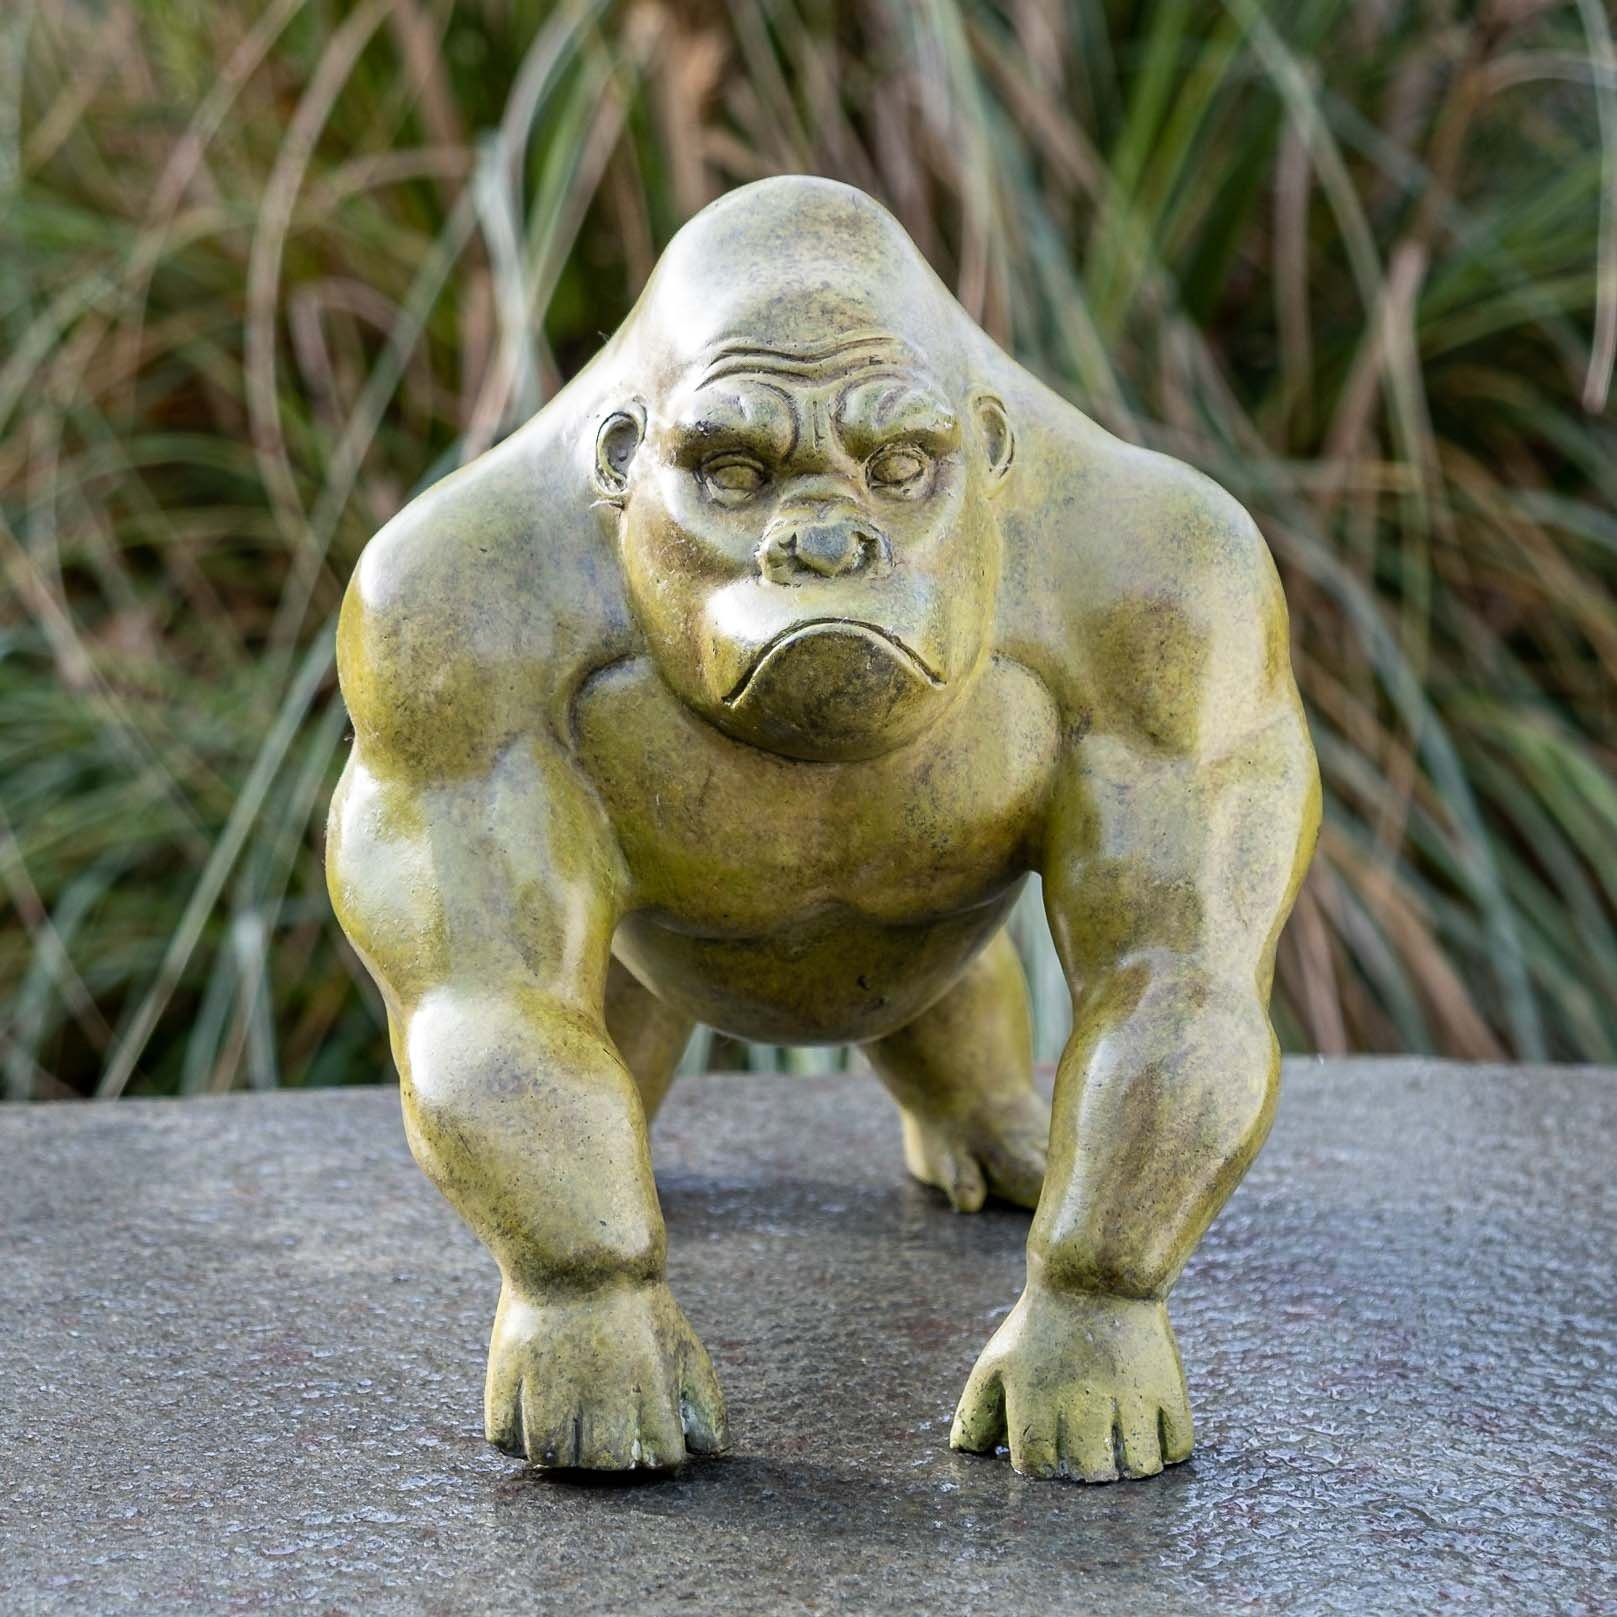 IDYL Gartenfigur IDYL Bronze-Skulptur Kleiner Moderner Gorilla, Bronze – sehr robust – Langlebig – witterungsbeständig gegen Frost, Regen und UV-Strahlung. Die Modelle werden in Wachsausschmelzverfahren in Bronze gegossen und von Hand patiniert.